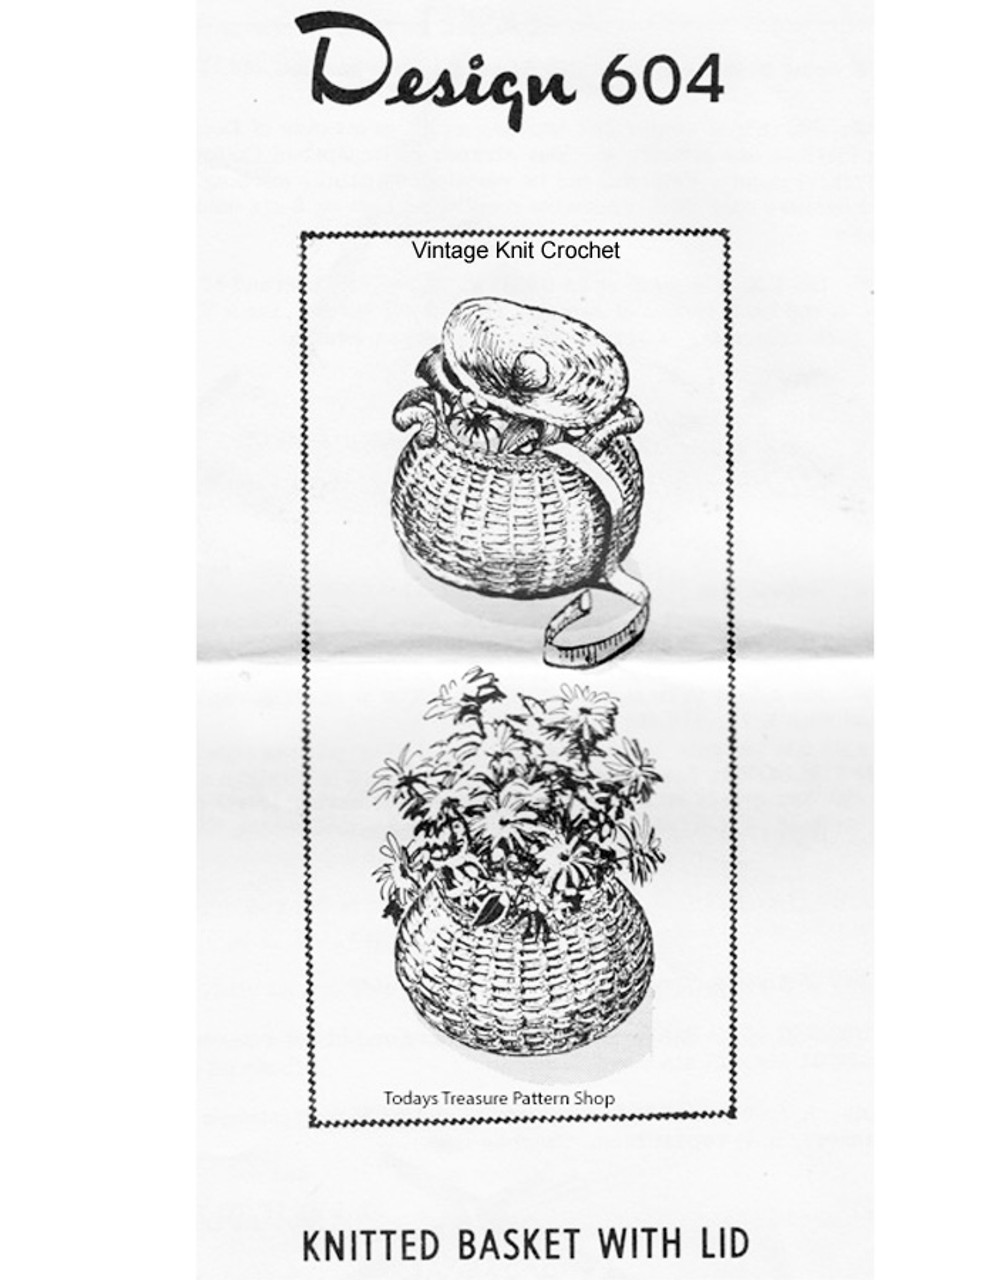 Knitted Basket Pattern, Mail Order Design 604